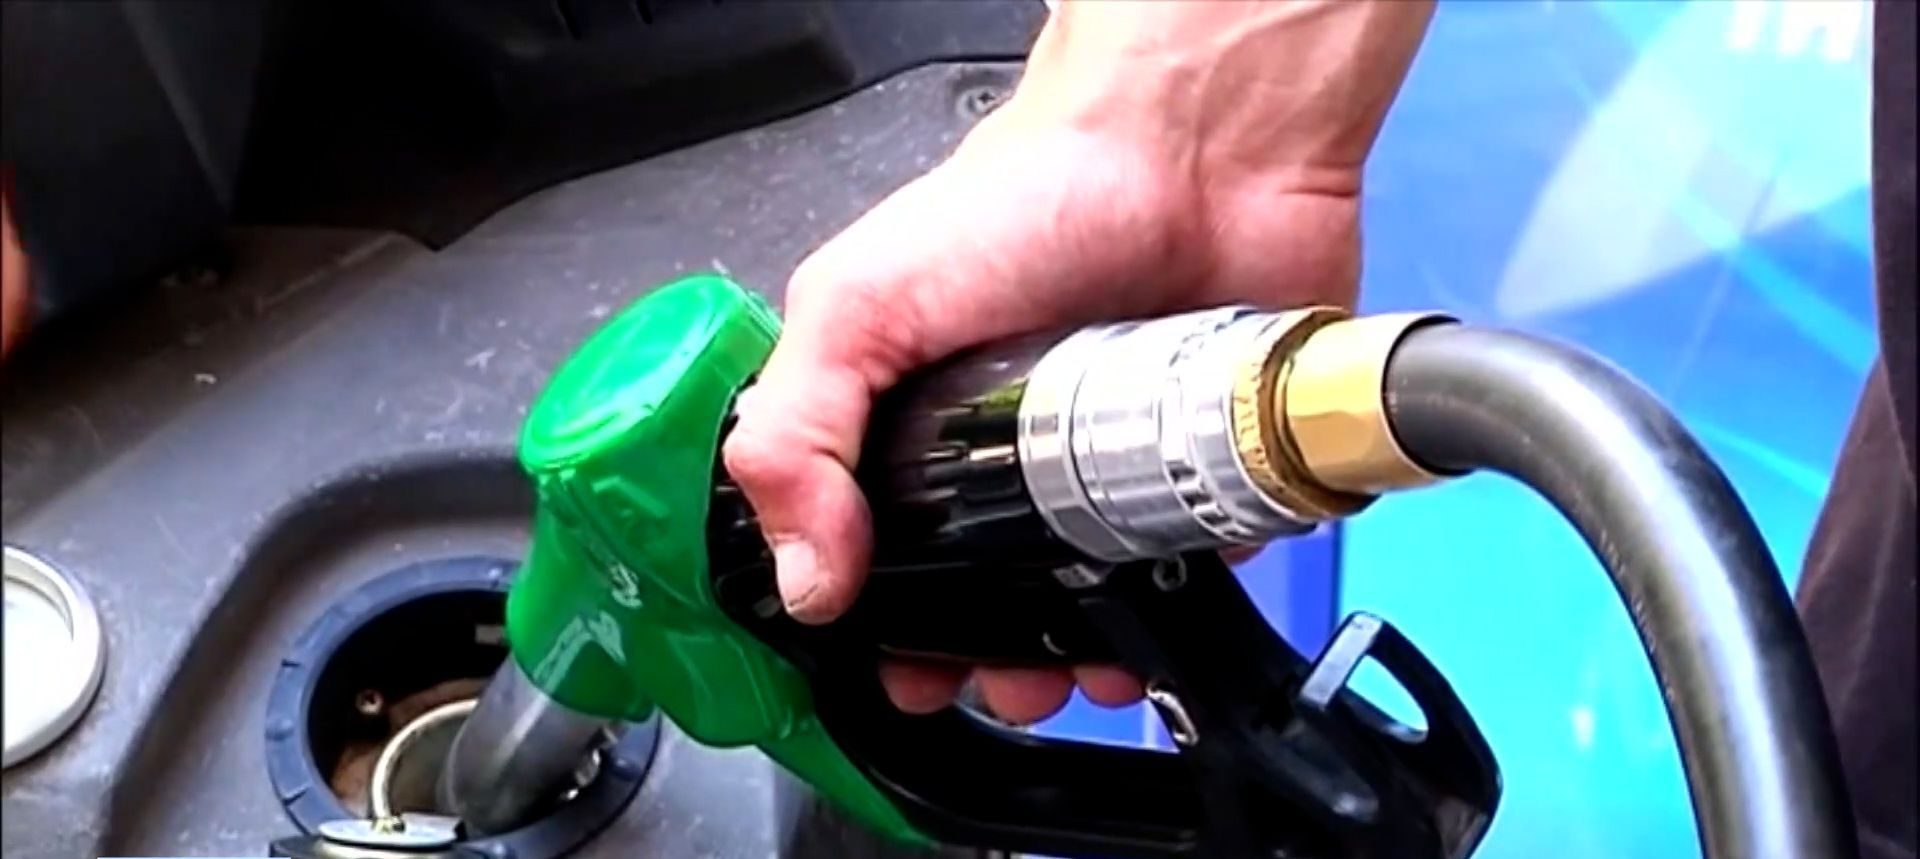 Καύσιμα: Εκτός ελέγχου οι αυξήσεις στη βενζίνη – Σκέψεις για επέκταση του fuel pass